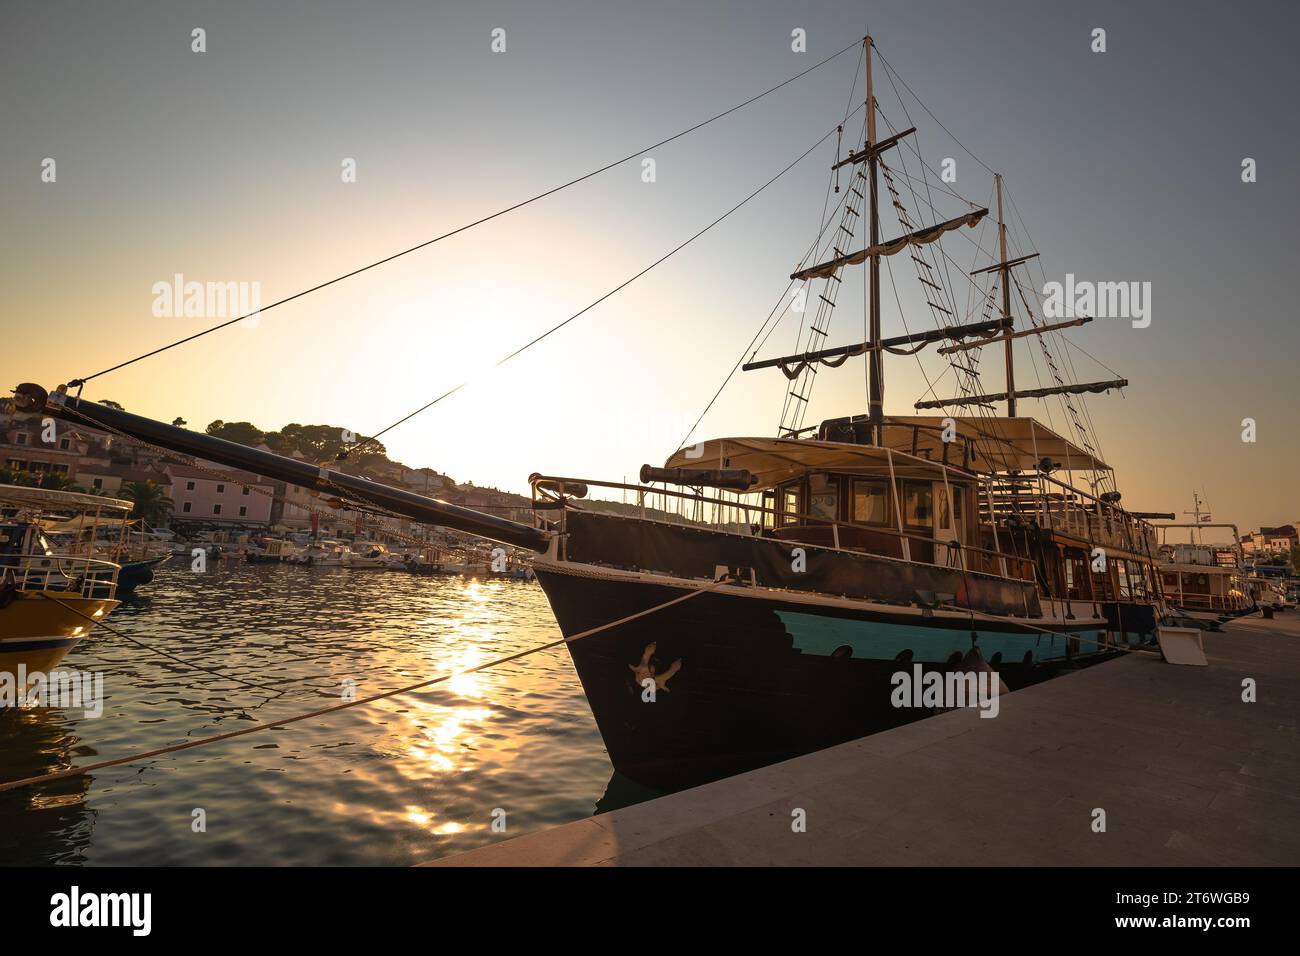 Porto di Mali Losinj, storica barca a vela in legno con vista al tramonto, isola di Lussino, arcipelago della Croazia Foto Stock